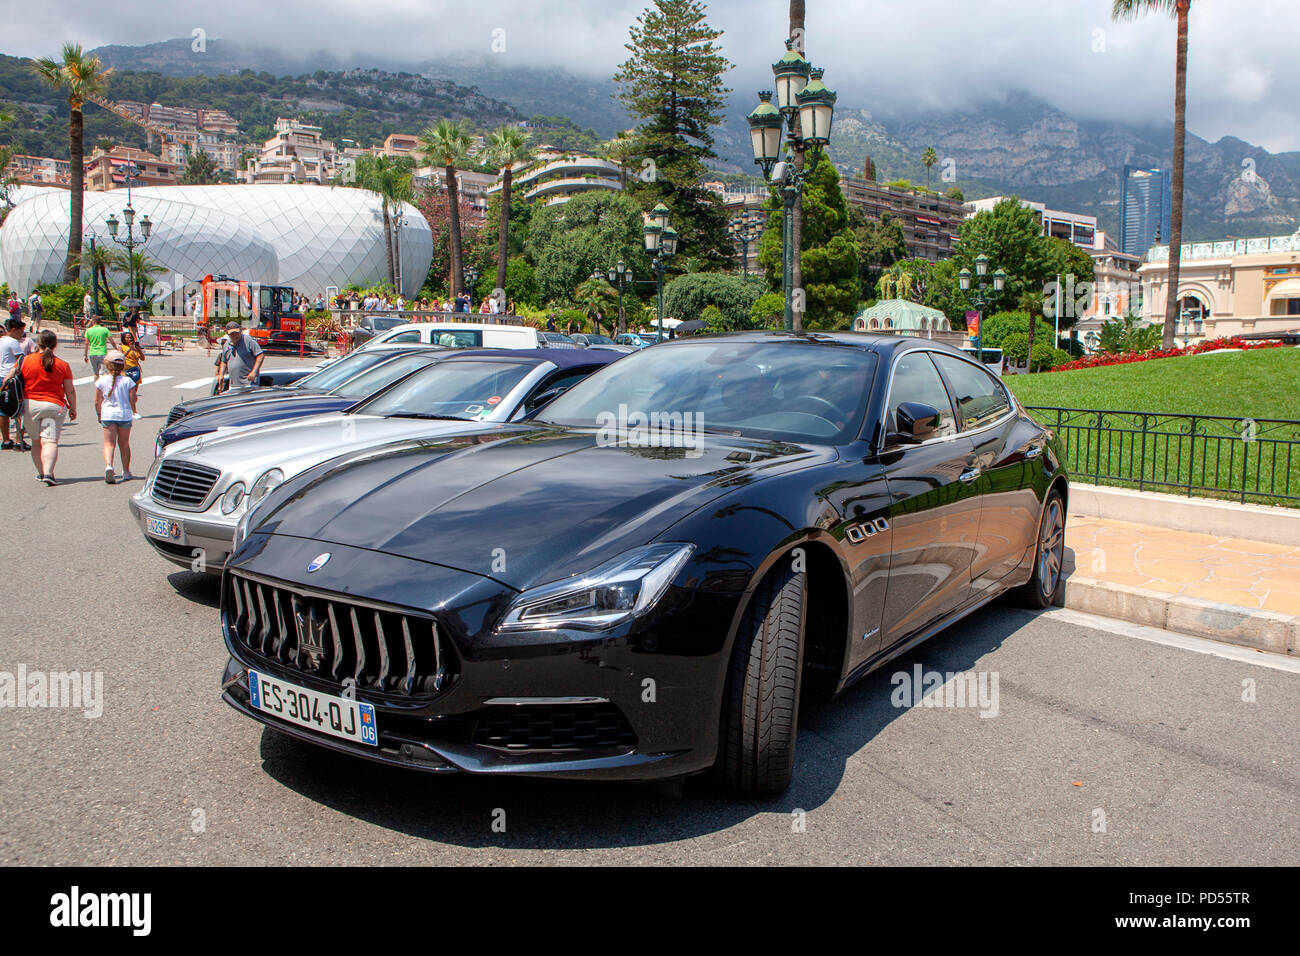 Black Maserati Ghibli Gran Lusso car parked at Monte Carlo in Monaco an administrative area of the Principality of Monaco Stock Photo